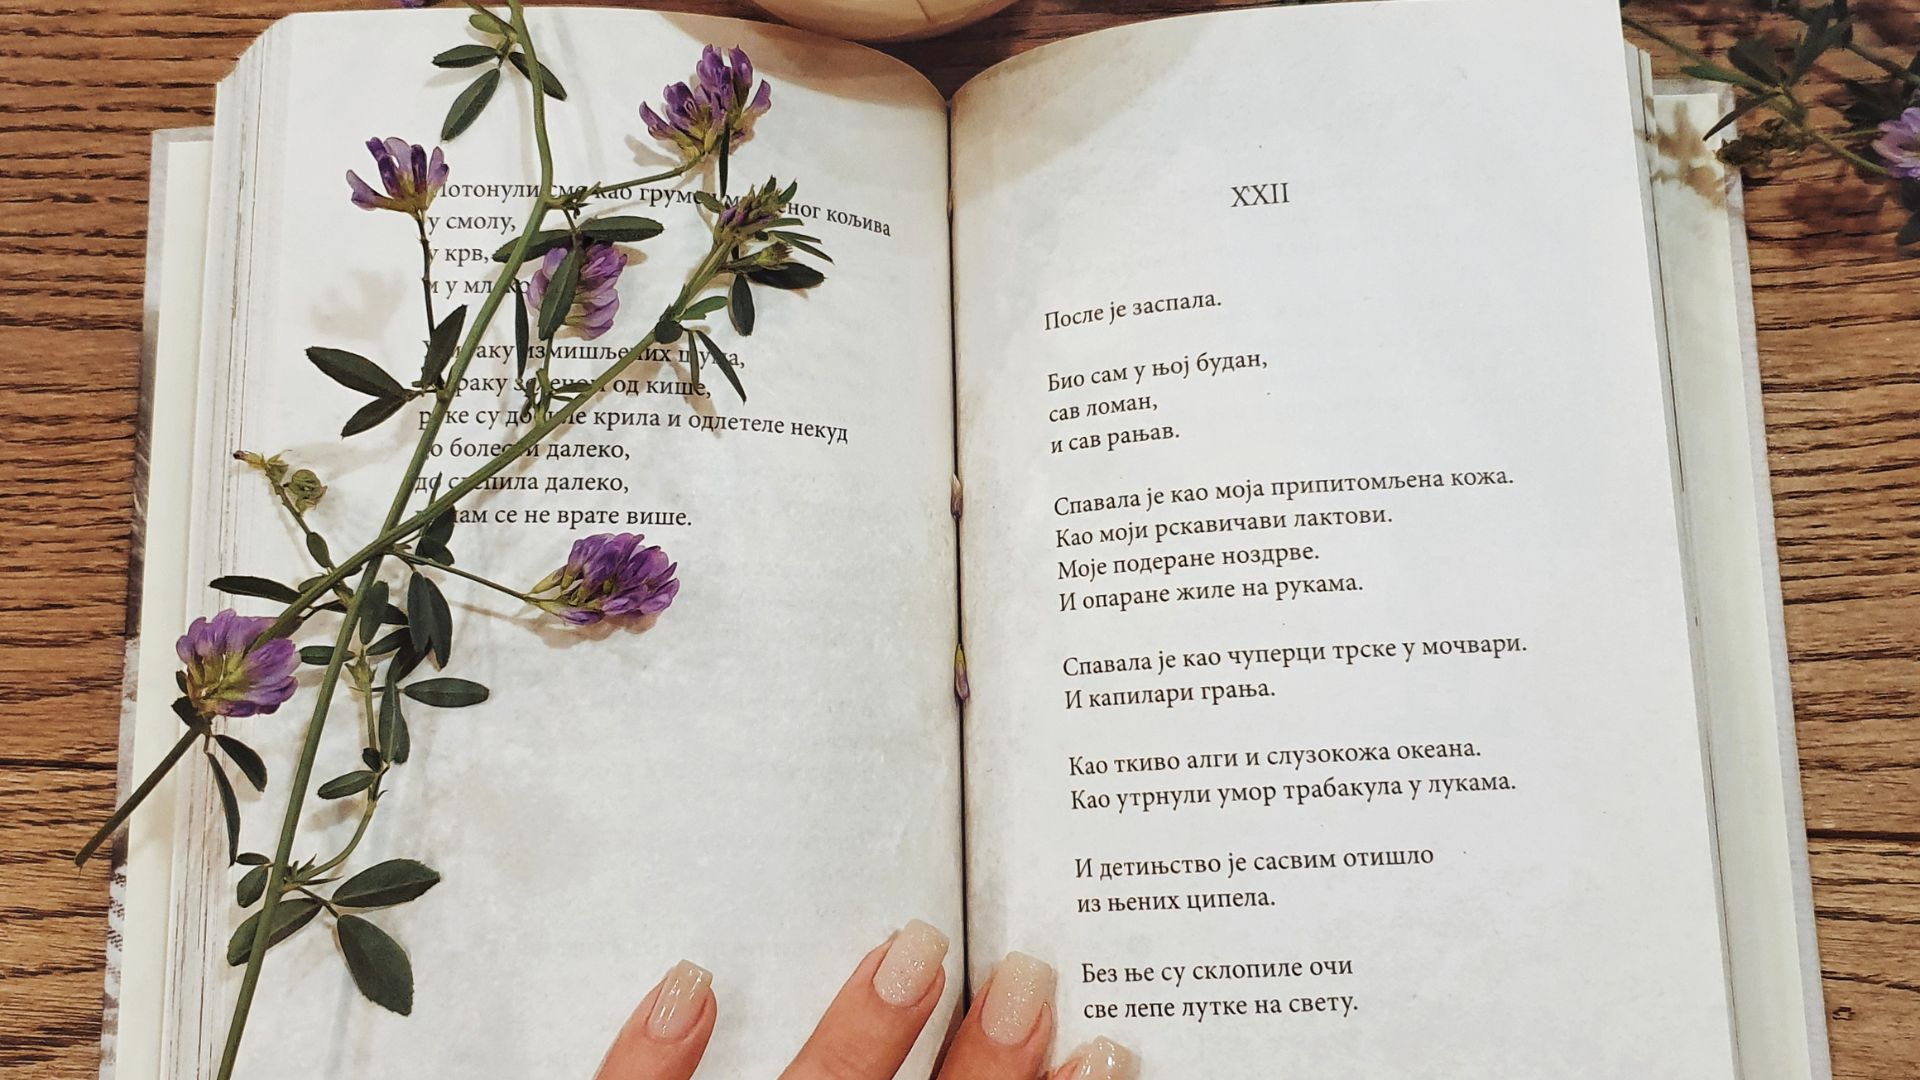 Imagem de um livro de poesias aberto com uma flor roxa em uma das páginas.